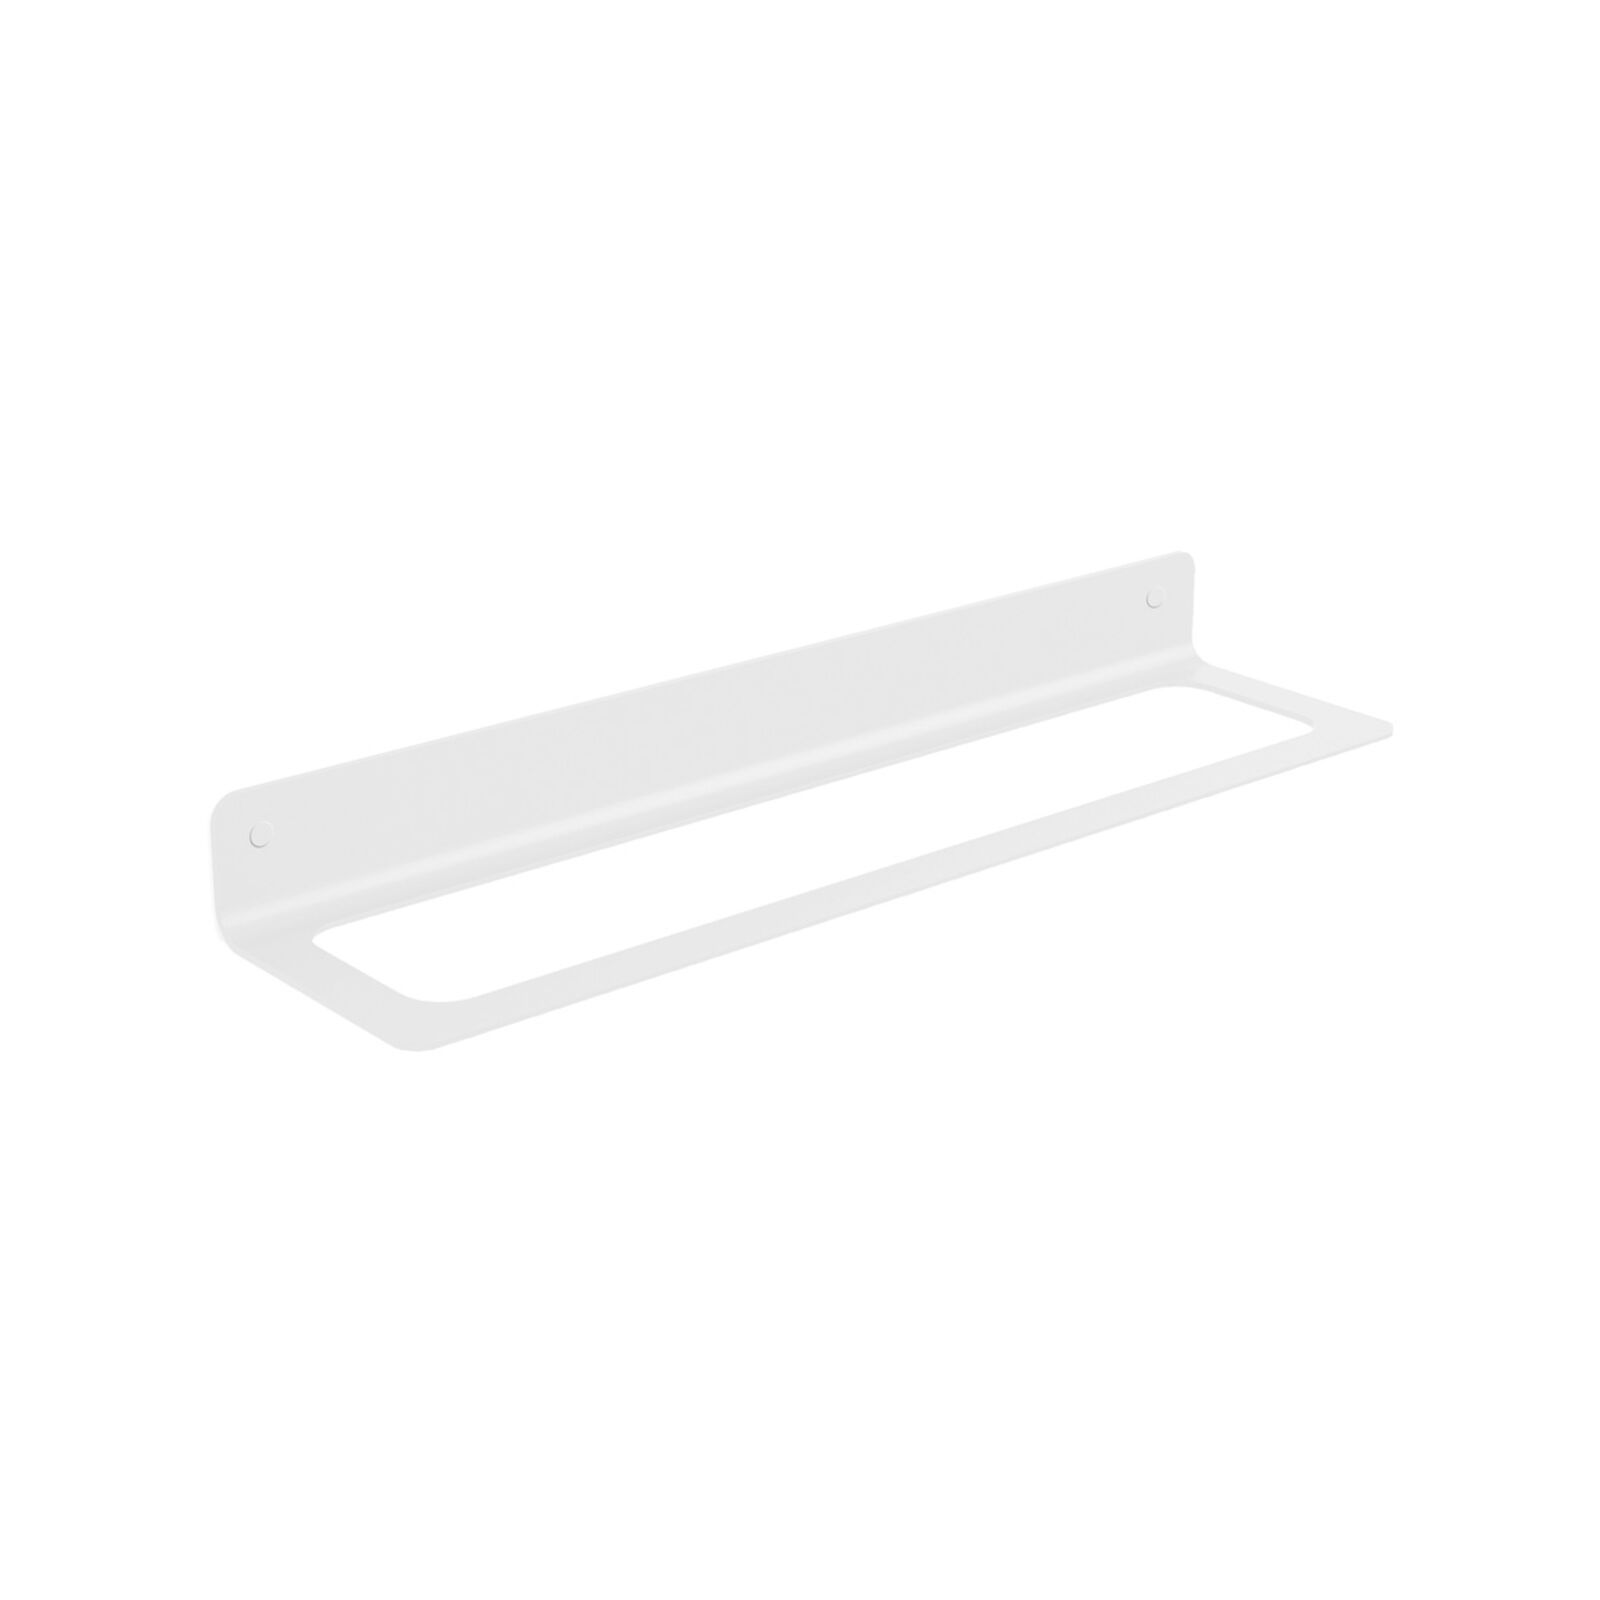 Porta asciugamani - Porta accessori Saeta in alluminio bianco L.45,4 cm